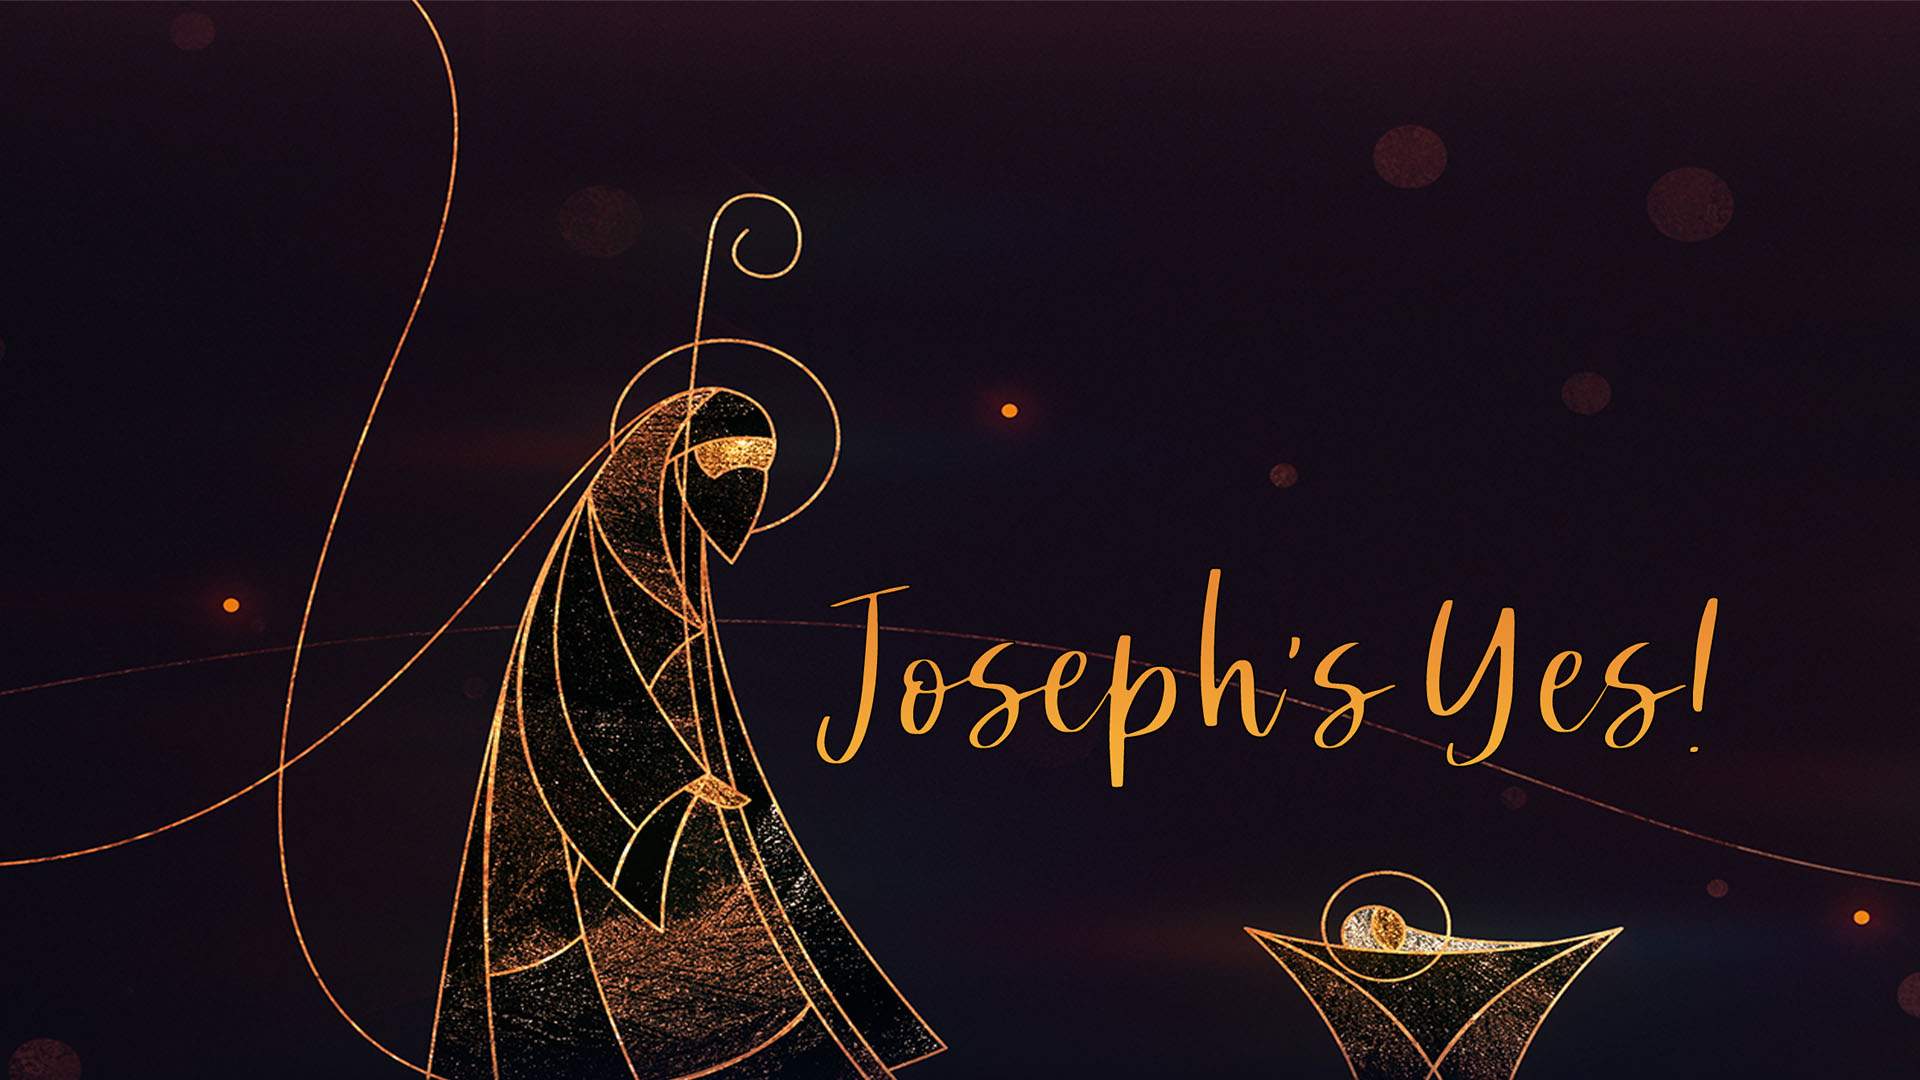 Joseph’s Yes!